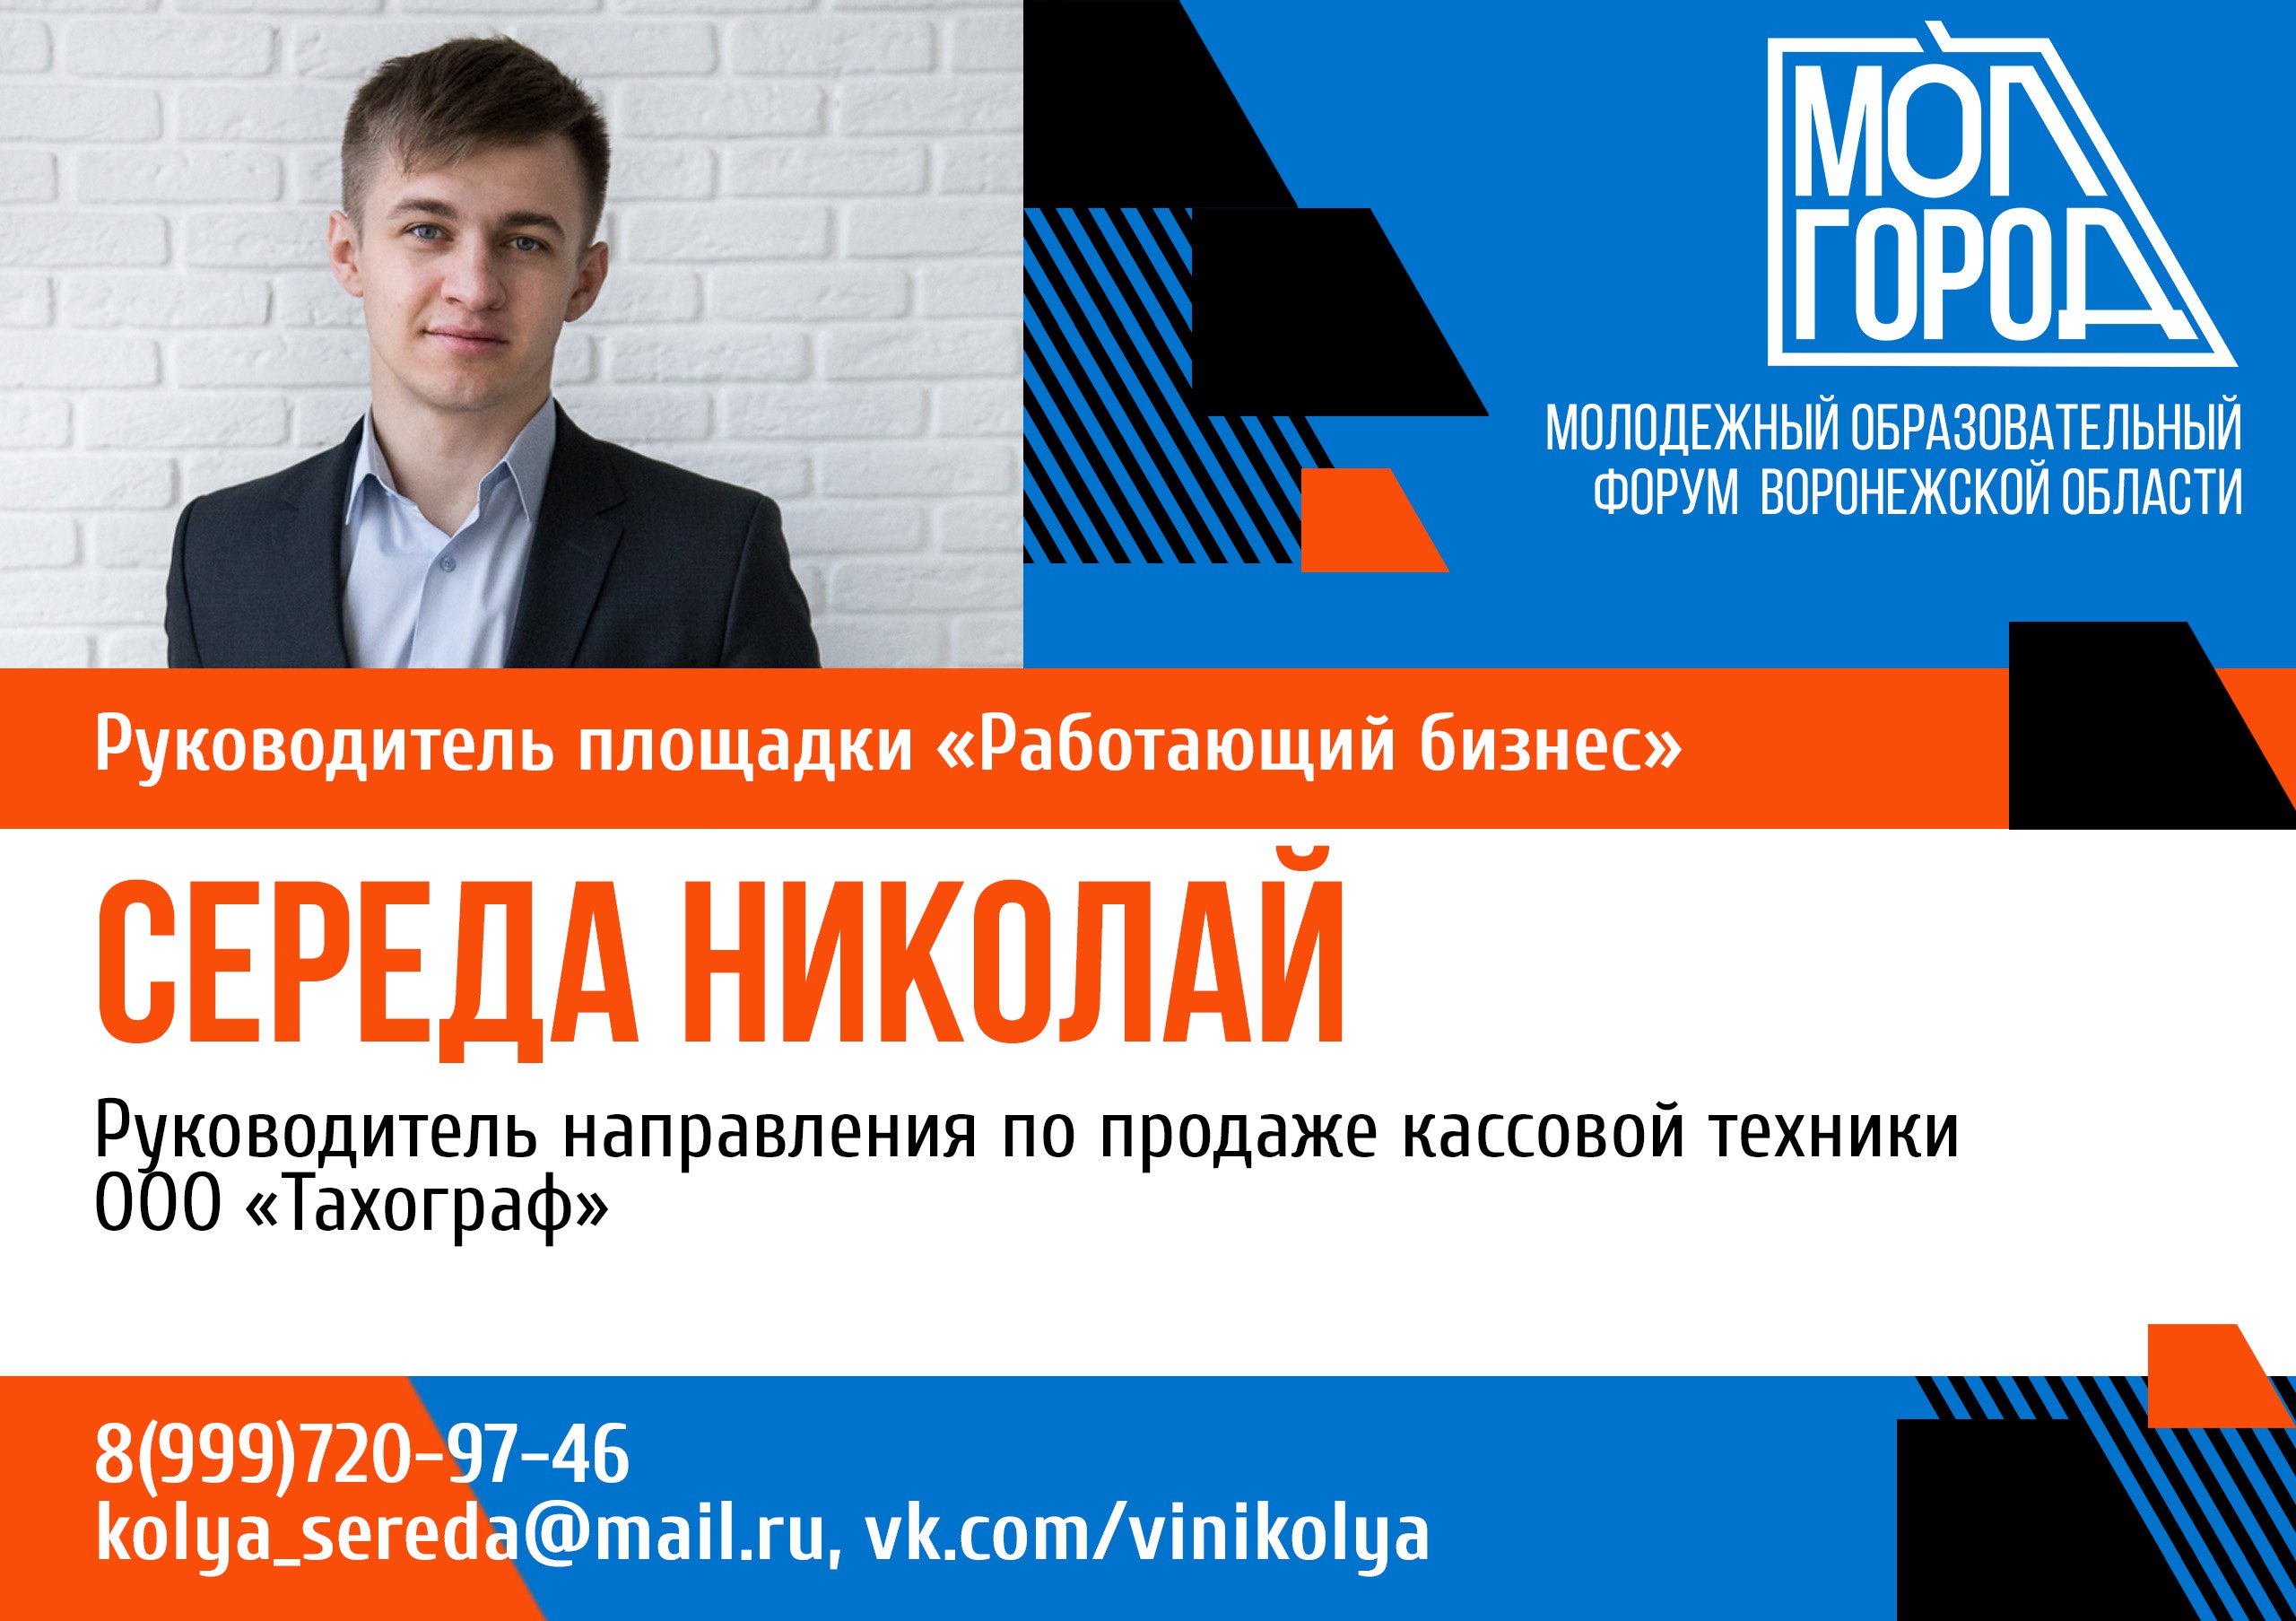 Форум «Молгород» пополнился площадкой для молодых бизнесменов